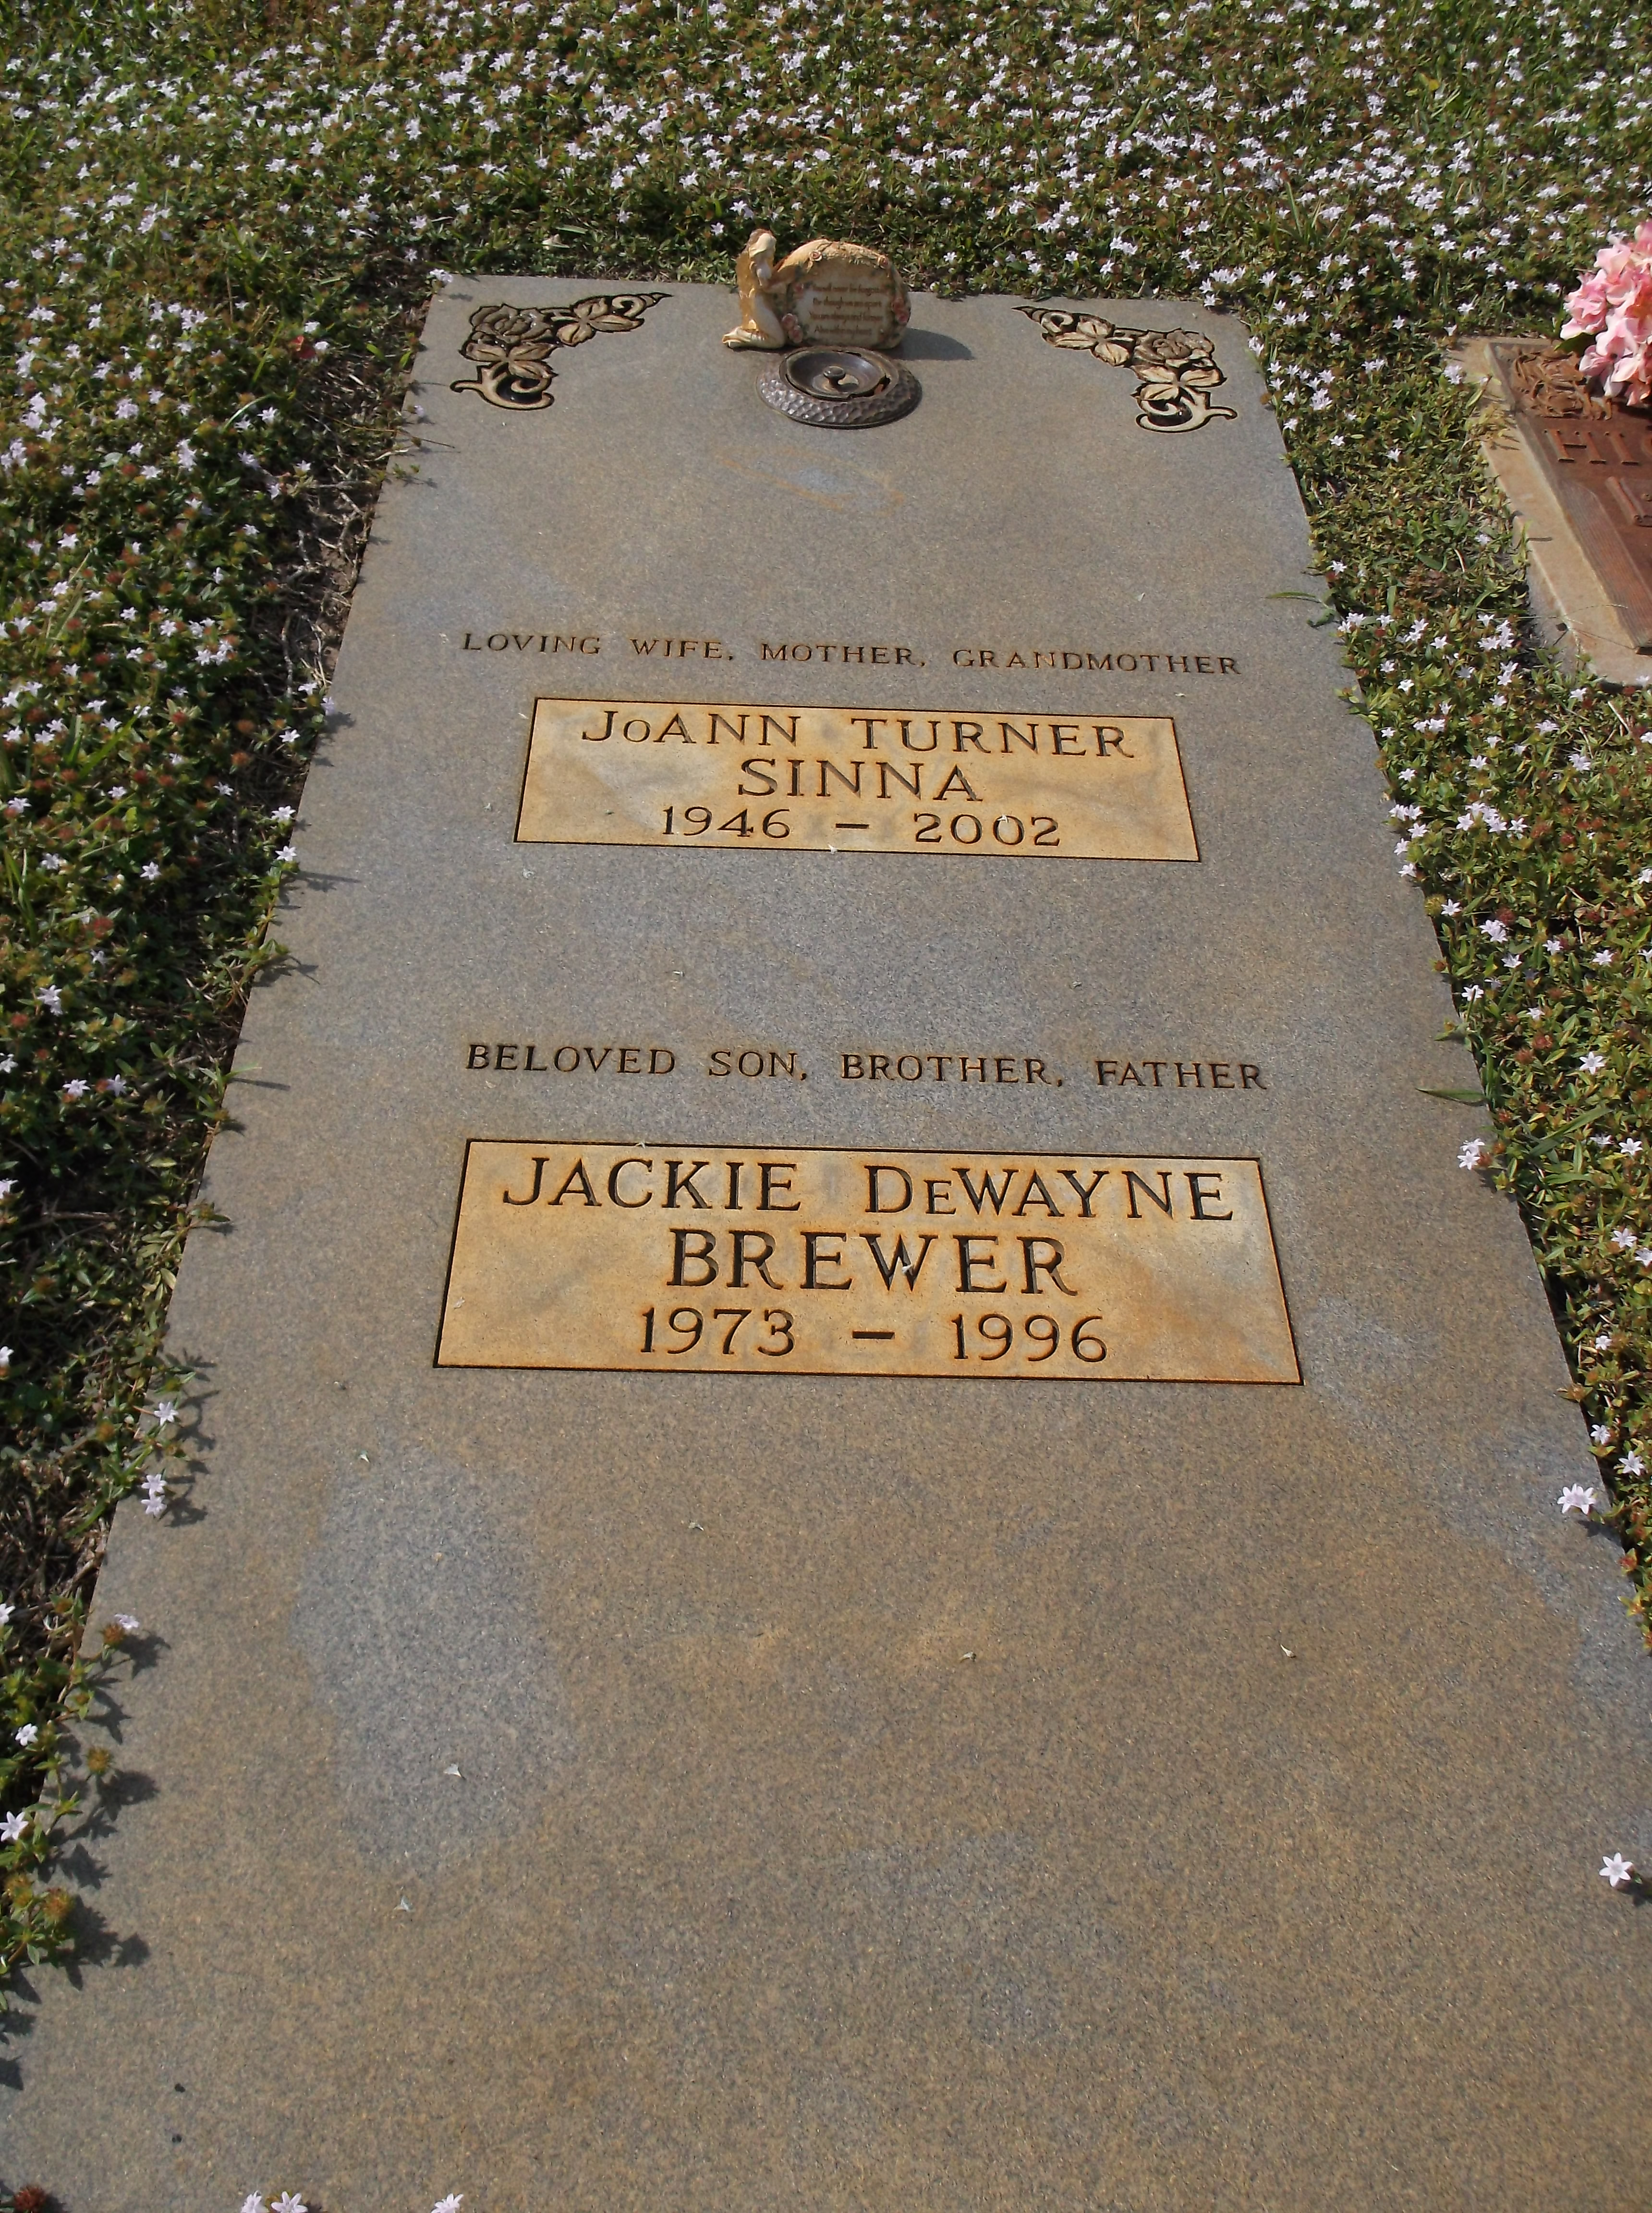 Jackie DeWayne Brewer